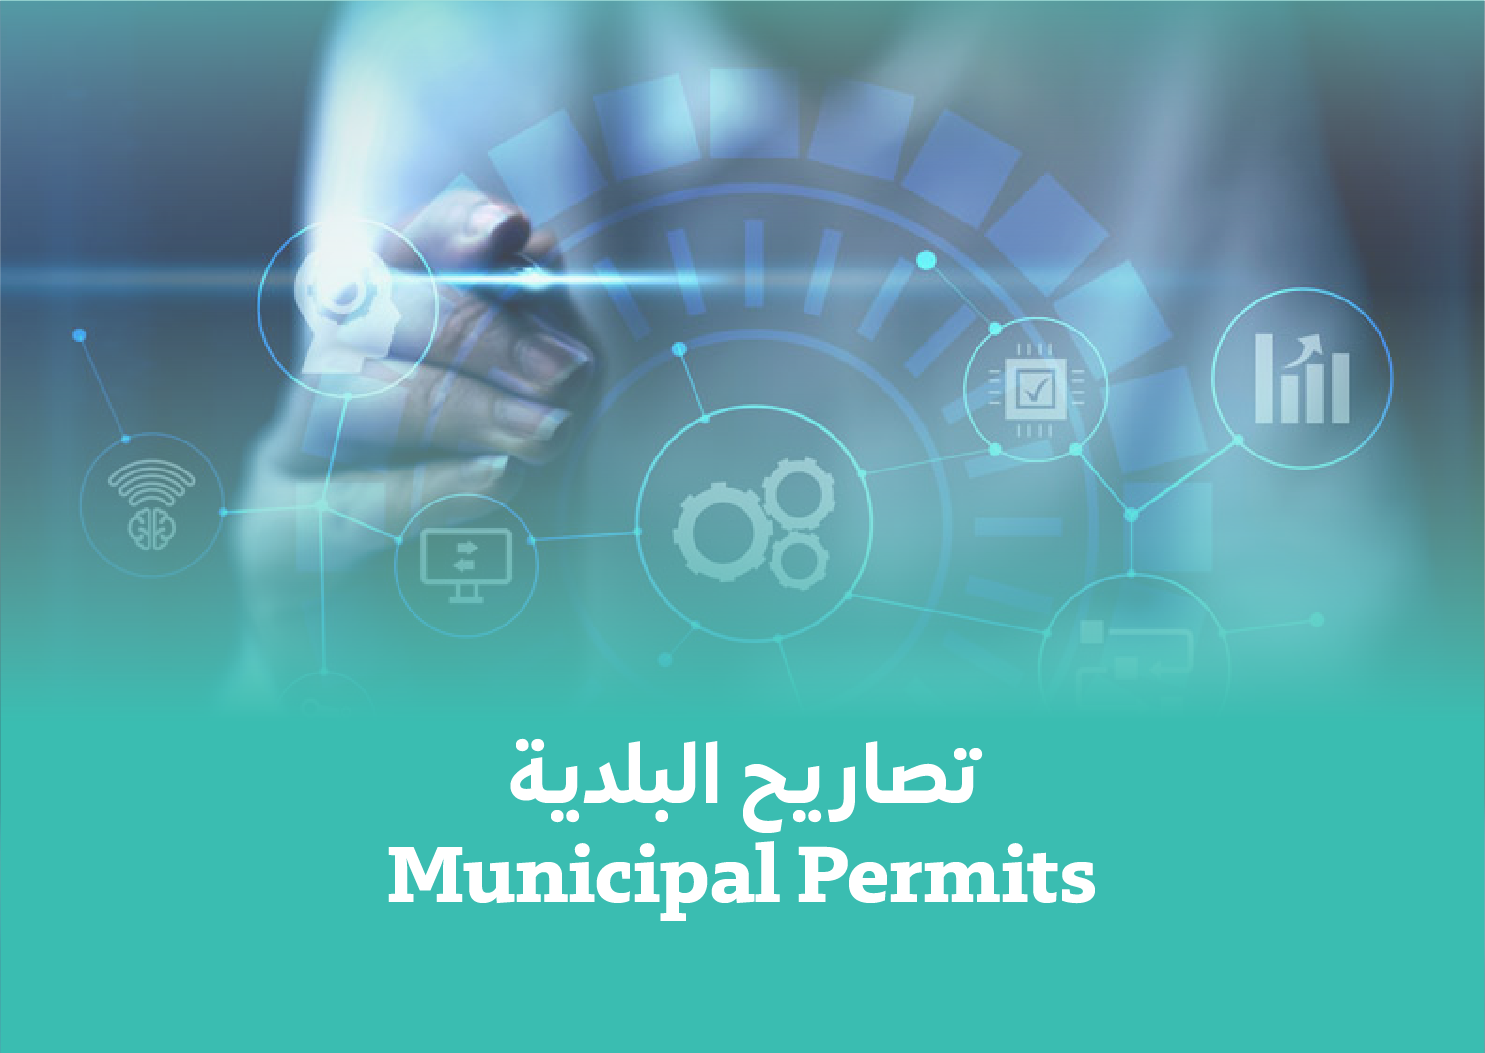 Municipal Permits